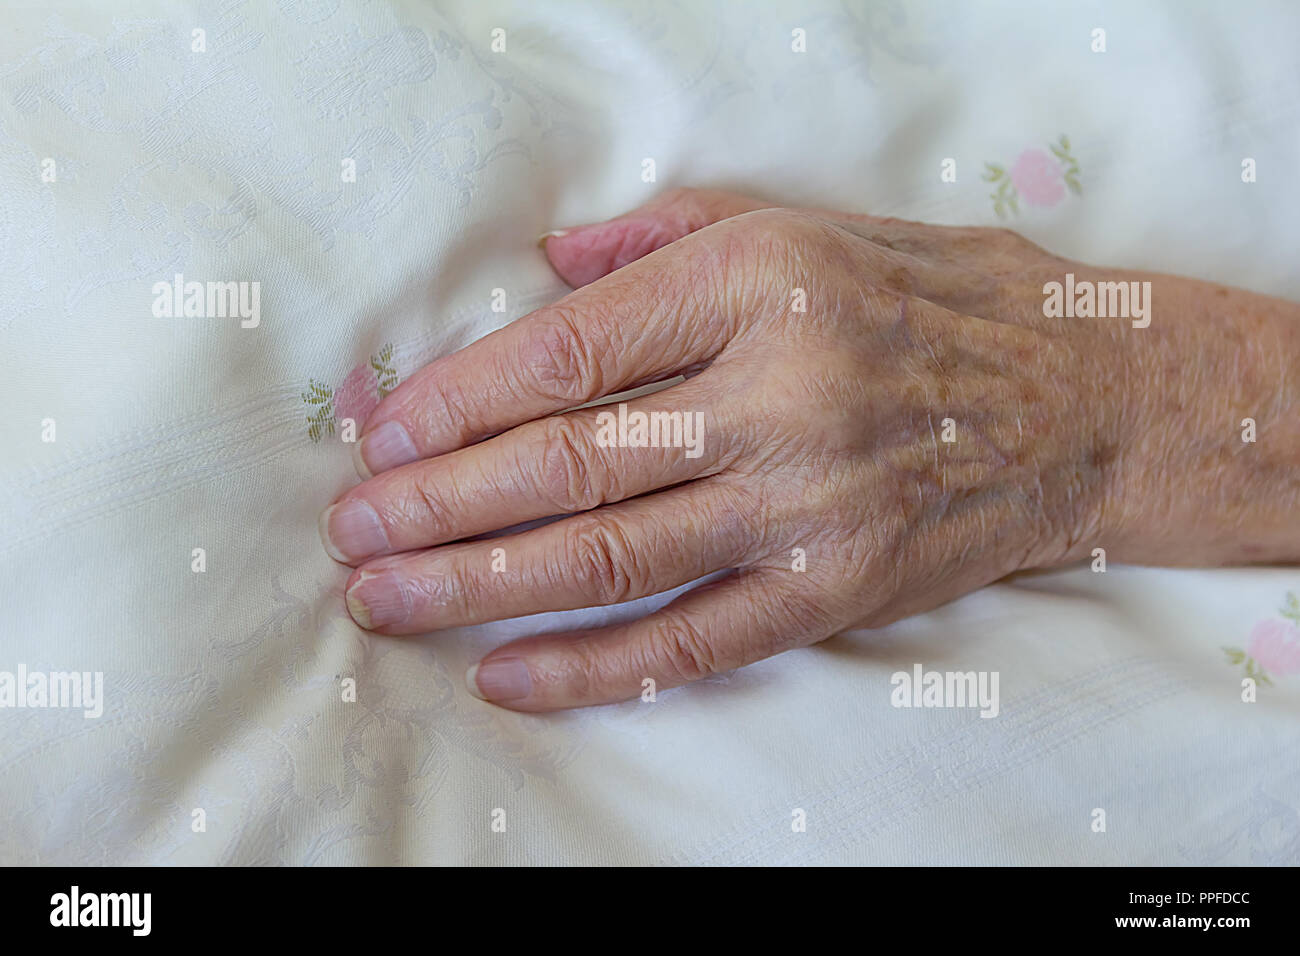 Uno scarno mano di una vecchia donna con una malattia terminale come il cancro su un leggero piumone, concetto di morte, morente Foto Stock